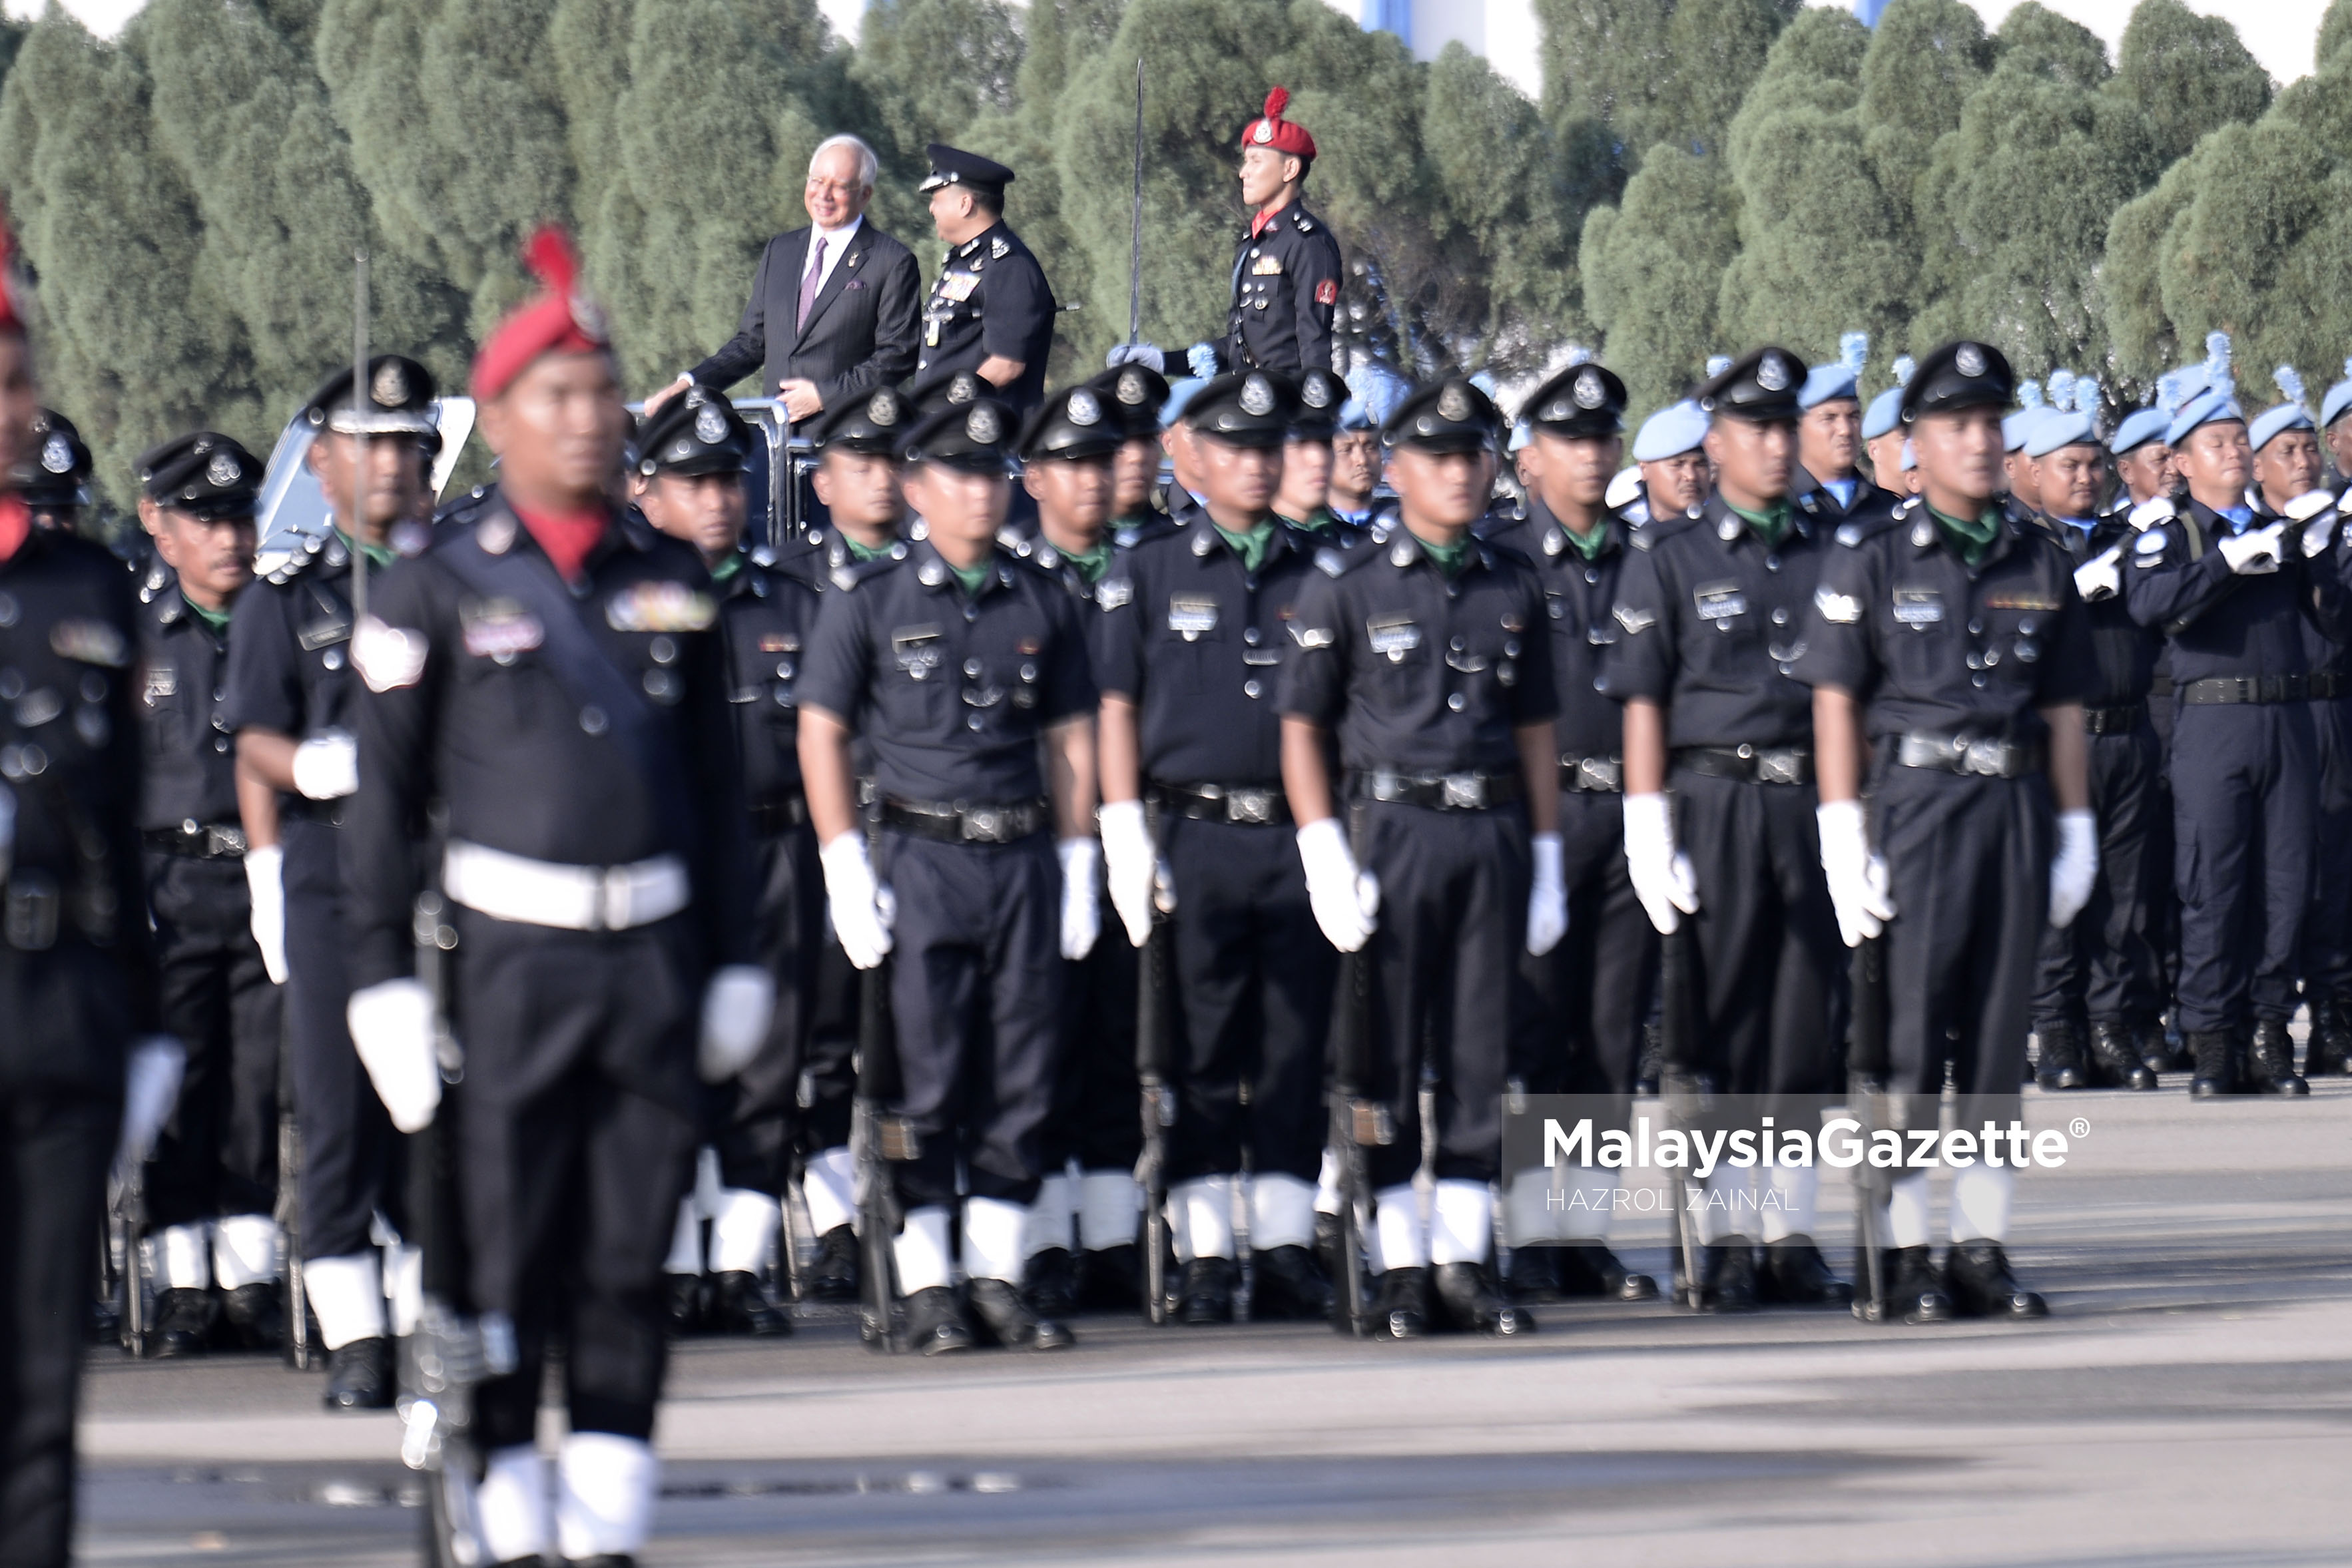 Perdana Menteri, Datuk Seri Najib Tun Razak diiringi Ketua Polis Negara, Tan Sri Khalid Abu Bakar memeriksa kawalan kehormat ketika hadir pada Majlis Perbarisan Peringatan Hari Polis ke-210 Tahun 2017 di Pusat Latihan Polis (PULAPOL) Jalan Semarak, Kuala Lumpur. foto MOHD HAZROL ZAINAL, 25 MAC 2017.